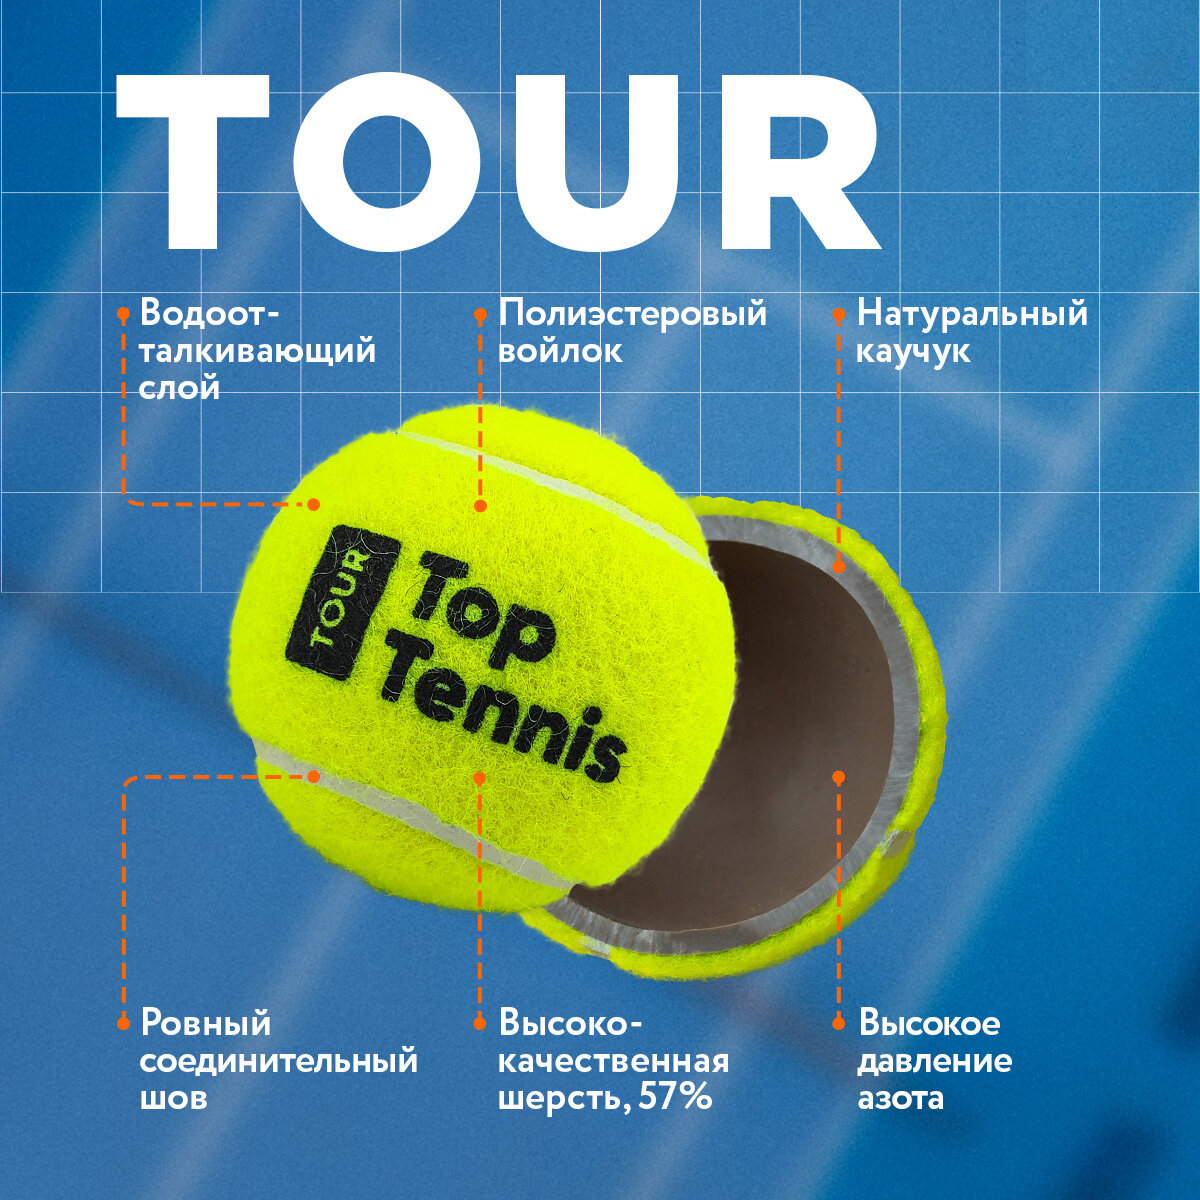 Теннисный мяч для большого тенниса профессиональный Top Tennis tbtour4 - 4 шт в в упаковке.